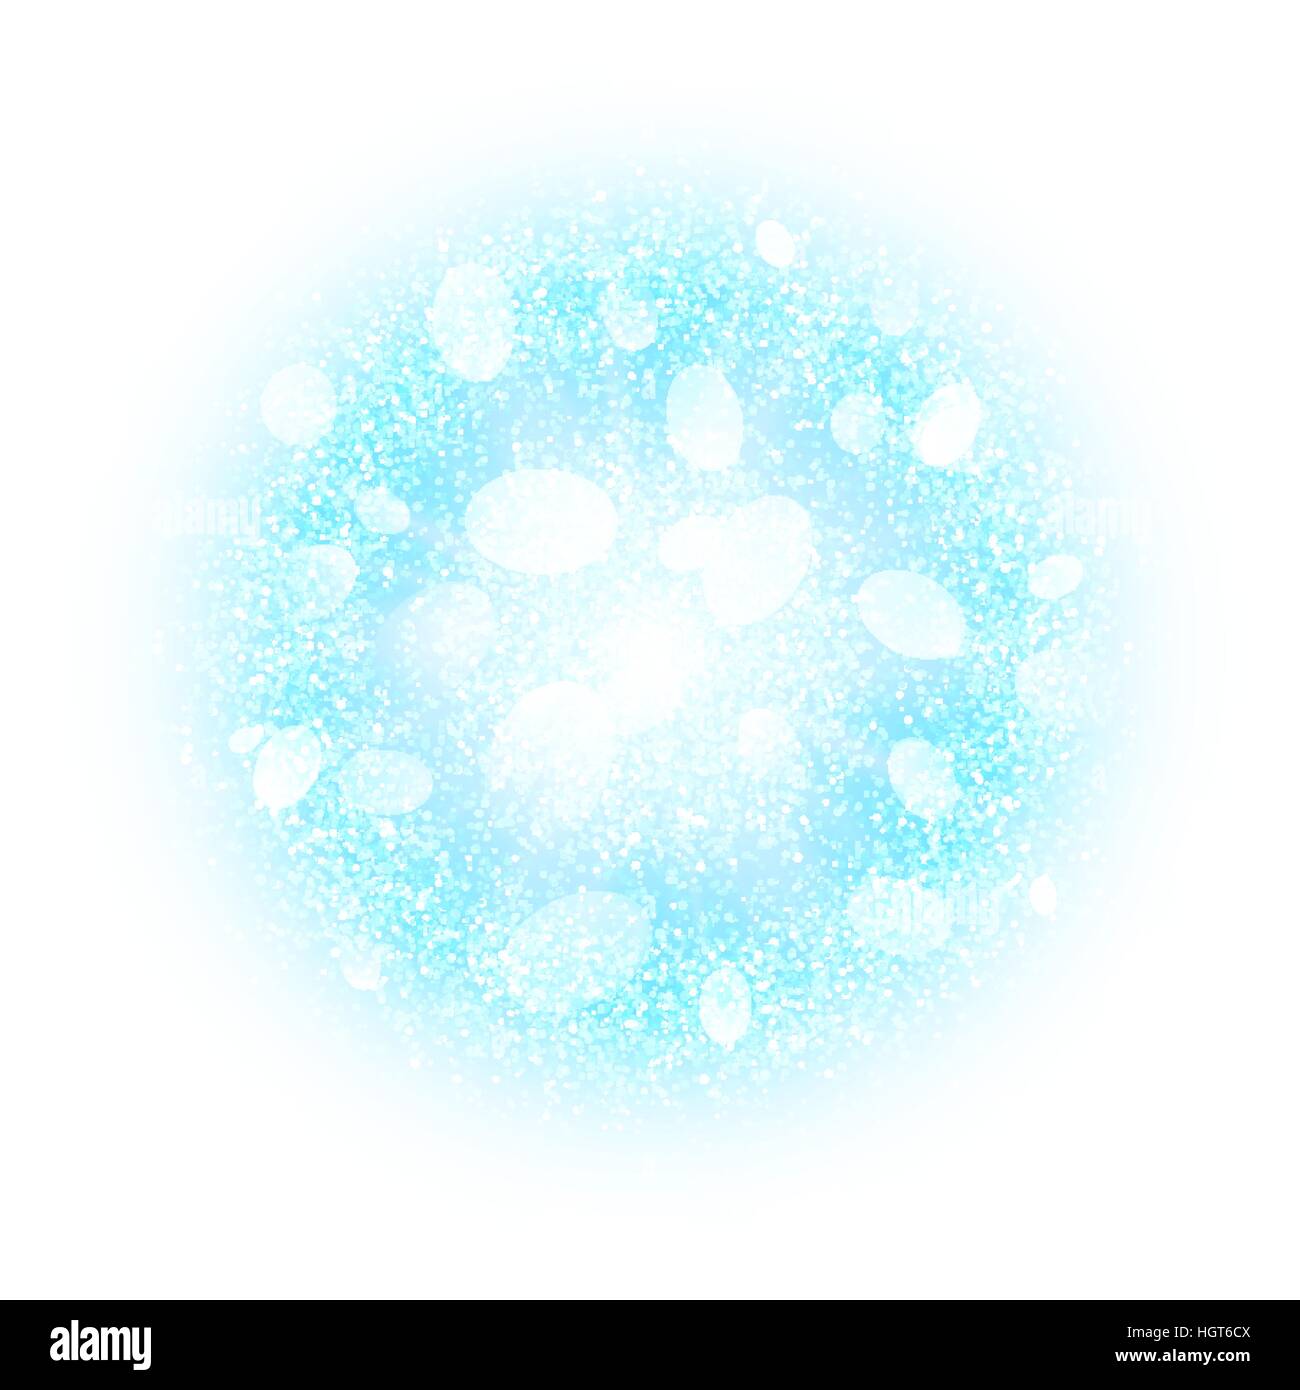 Abstract esplosione con blu e polvere bianca elementi isolati su bianco. Raffica di neve ghiacciata palla. La polvere brillante fuochi d' artificio effetto luminoso con alone blu. Sparkles splash sfondo in polvere. Illustrazione Vettoriale Illustrazione Vettoriale